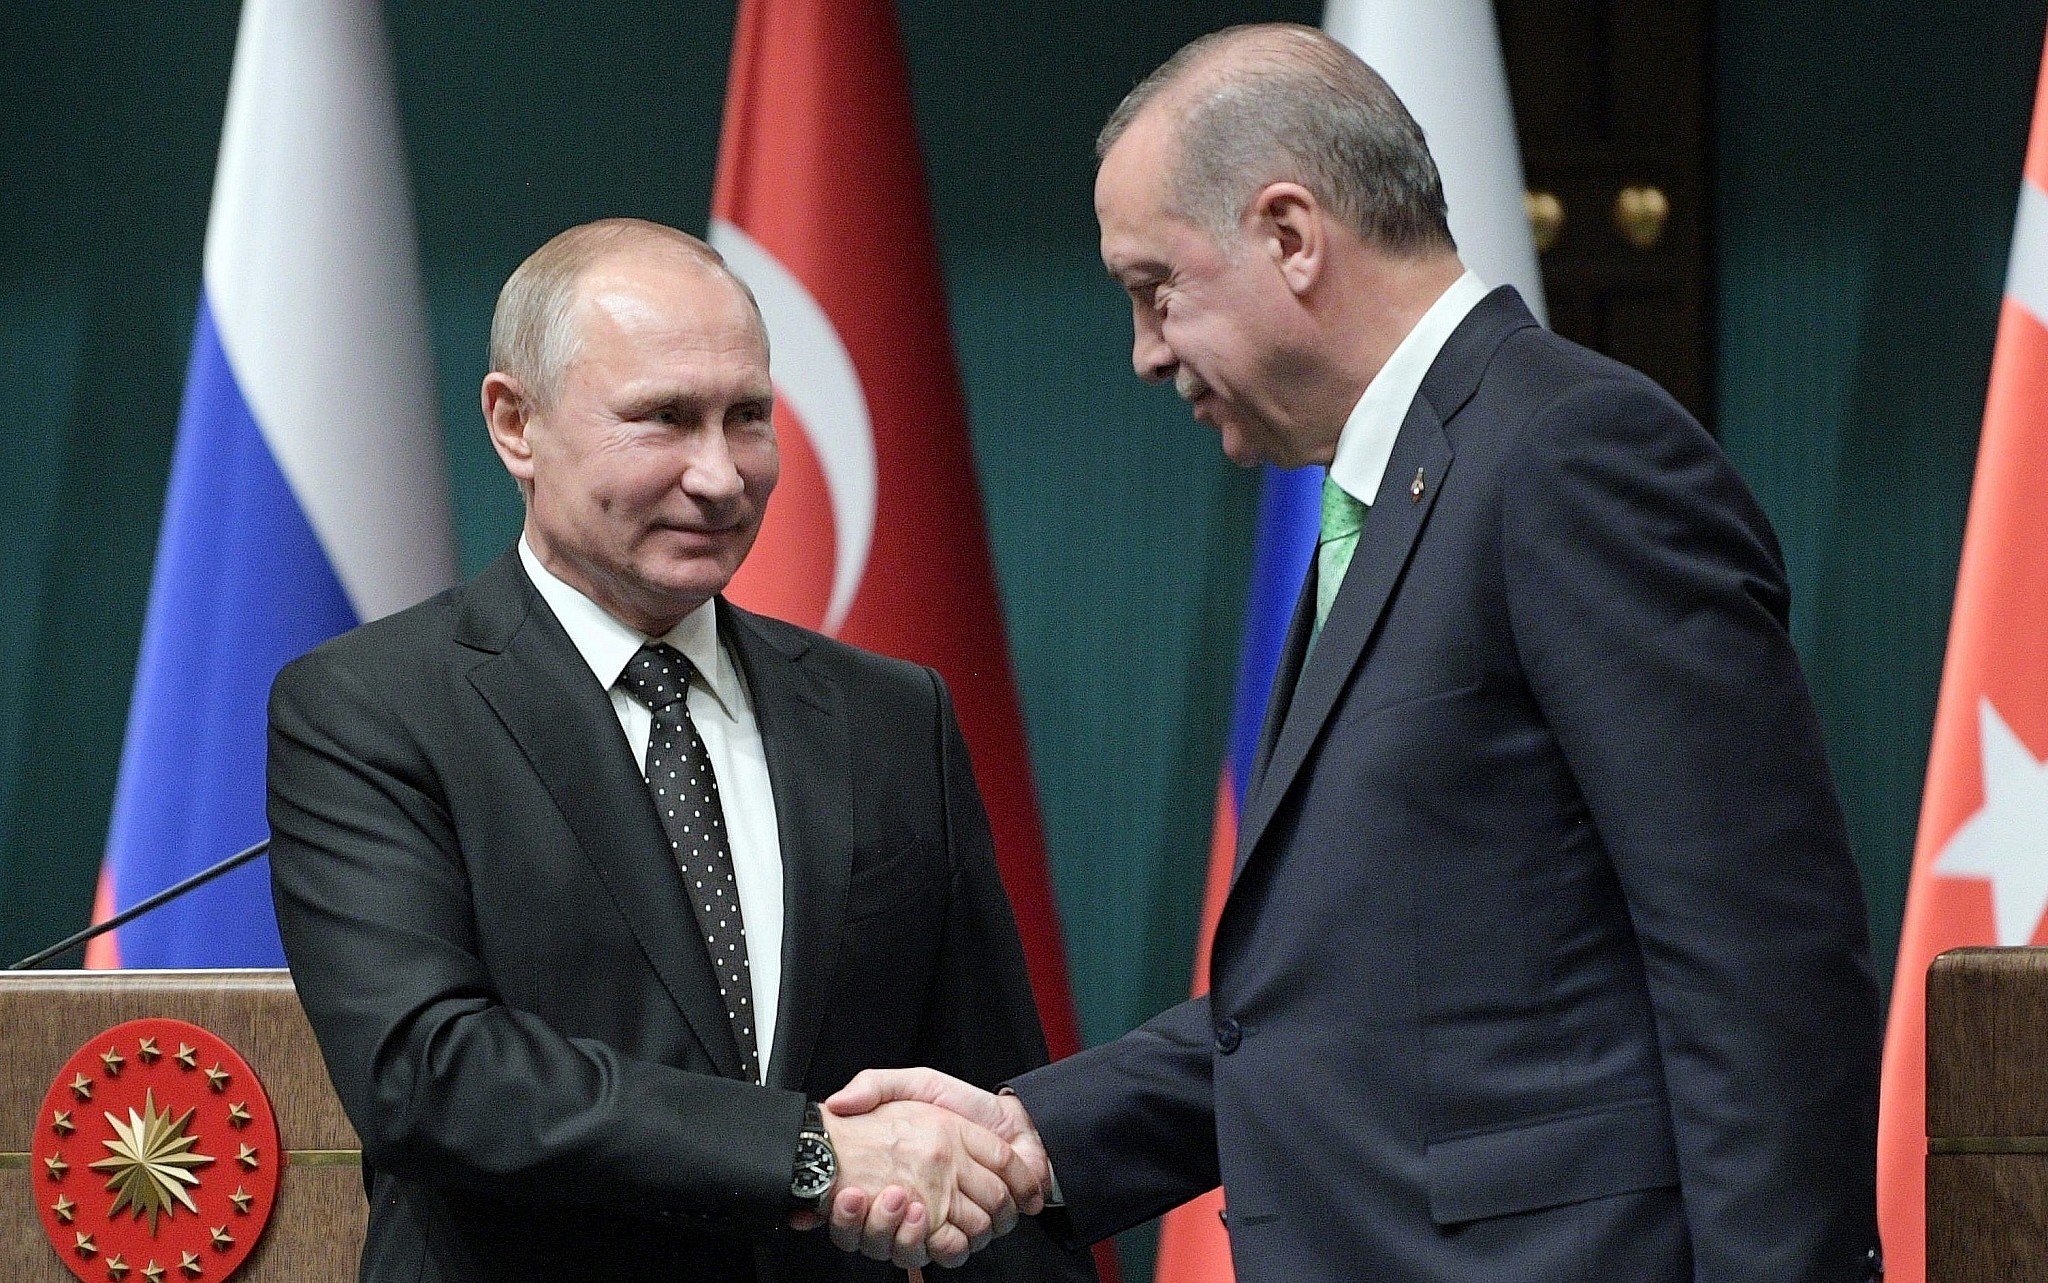 Պուտինը կմեկնի՞ Թուրքիա. Պեսկովի պատասխանը